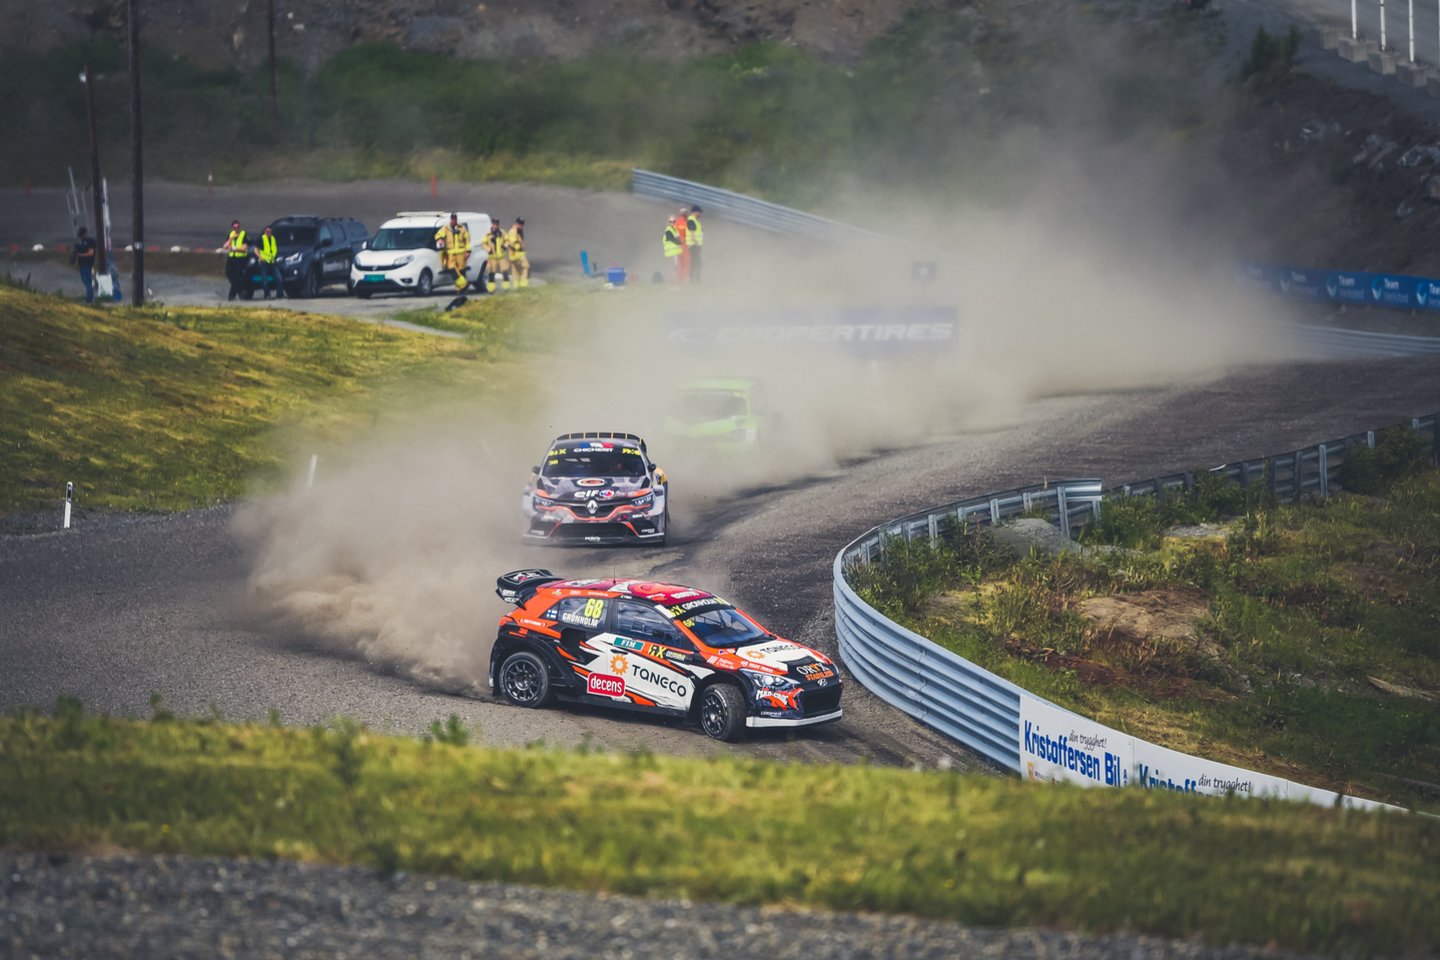 Birželio 15 dieną Norvegijoje, „Hell“ trasoje, startavo penktasis Pasaulio ralio čempionato etapas, kuriame prie lietuviškos „Esmotorsport-LabasGas“ komandos „Škoda Fabia WRX“ automobilio vairo sėdo olandų lenktynininkas Kevinas Abbringas, prieš sezoną dirbęs komandos bolido testuotoju.<br>Vytauto Pilkausko nuotr.